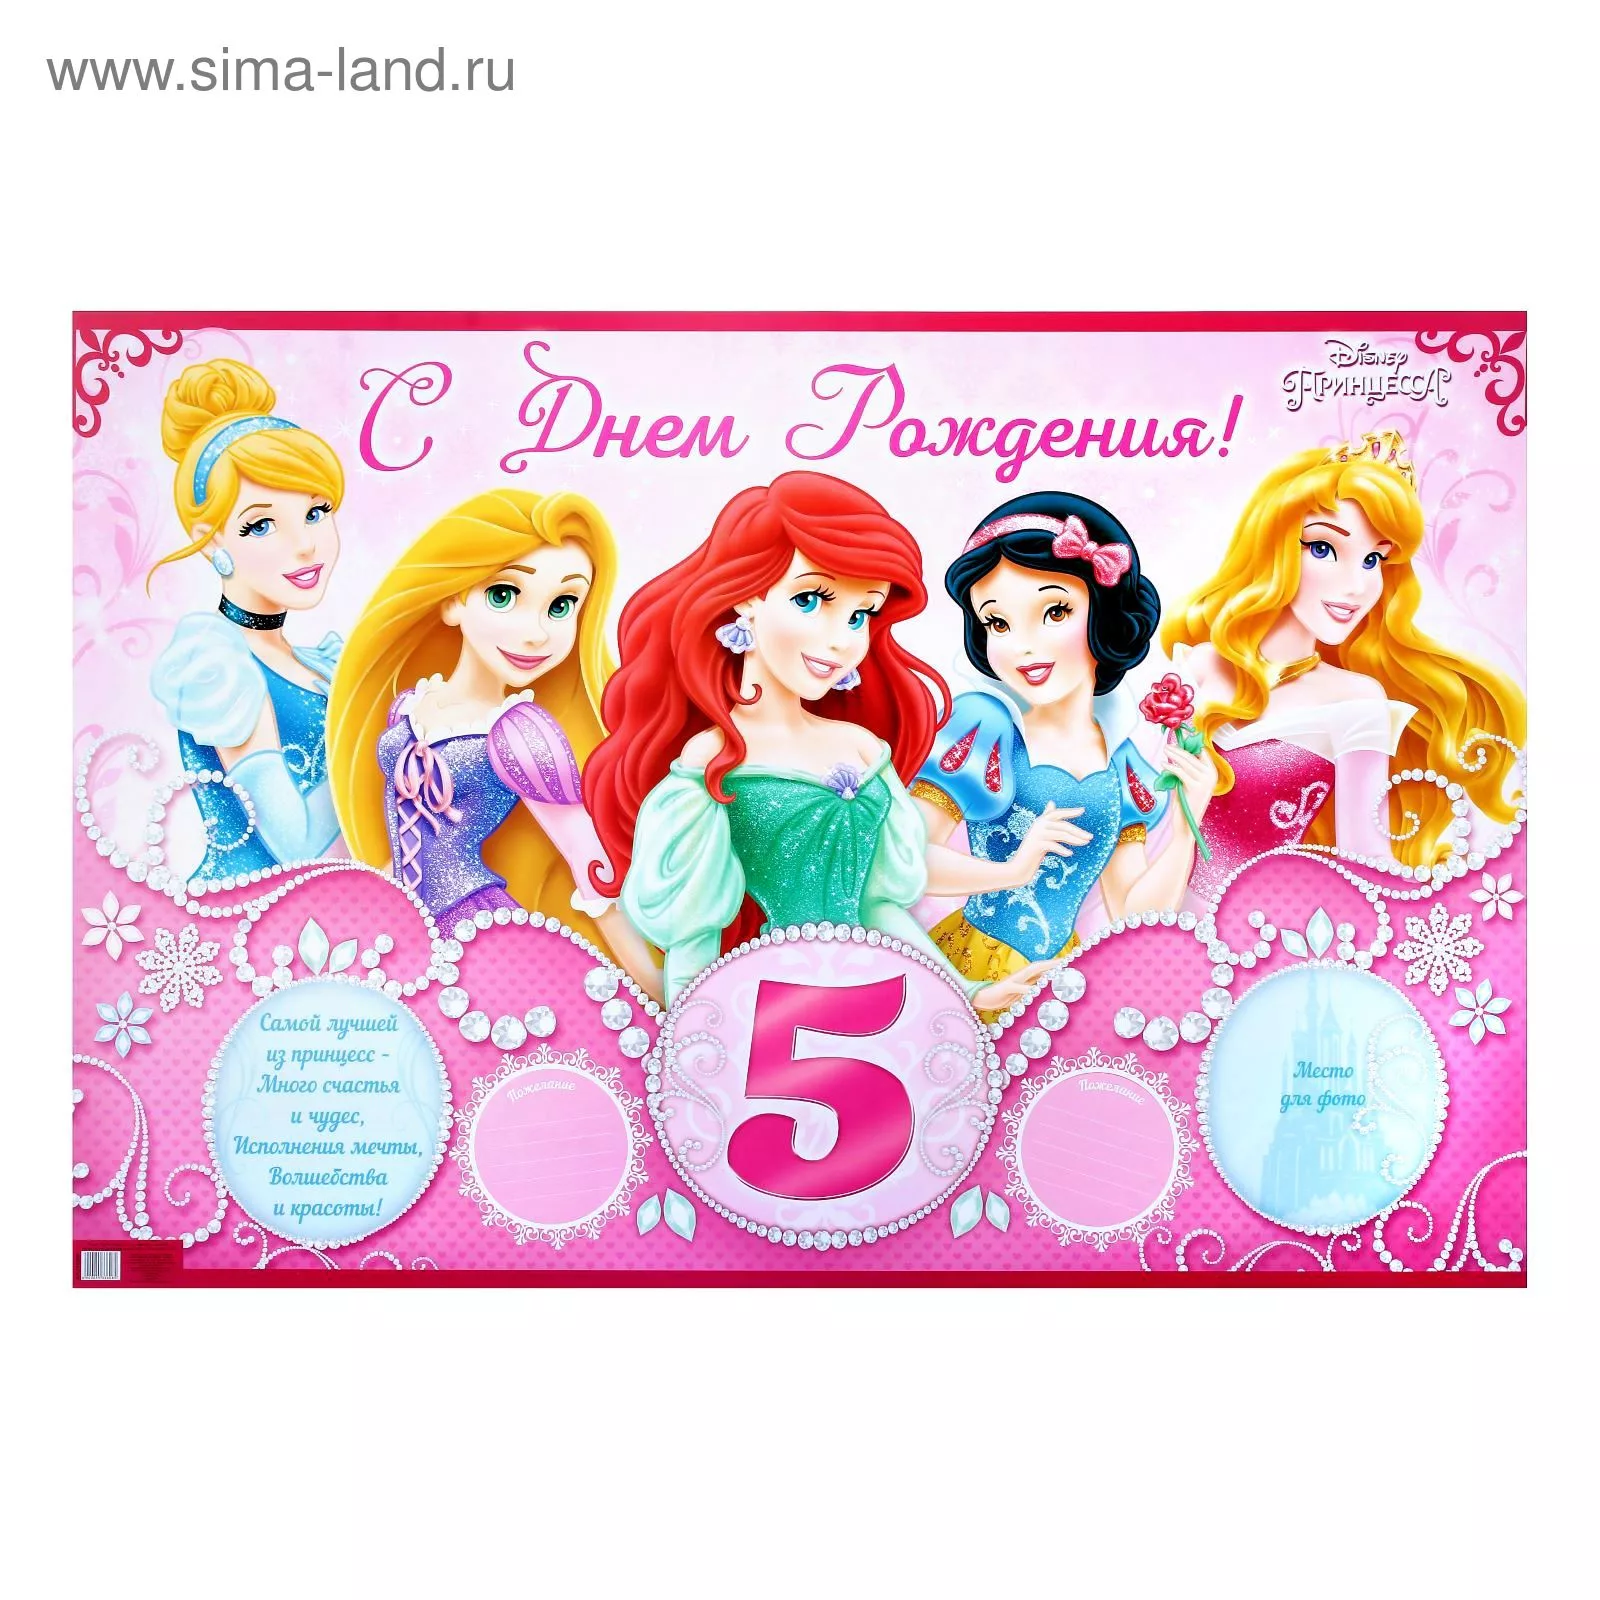 Поздравляю с днем рождения девочки 5 лет. С днём рождения 5 лет девочке. Плакат с днем рождения 5 лет. День рождения принцессы. С днем рождения принцесса 5 лет.